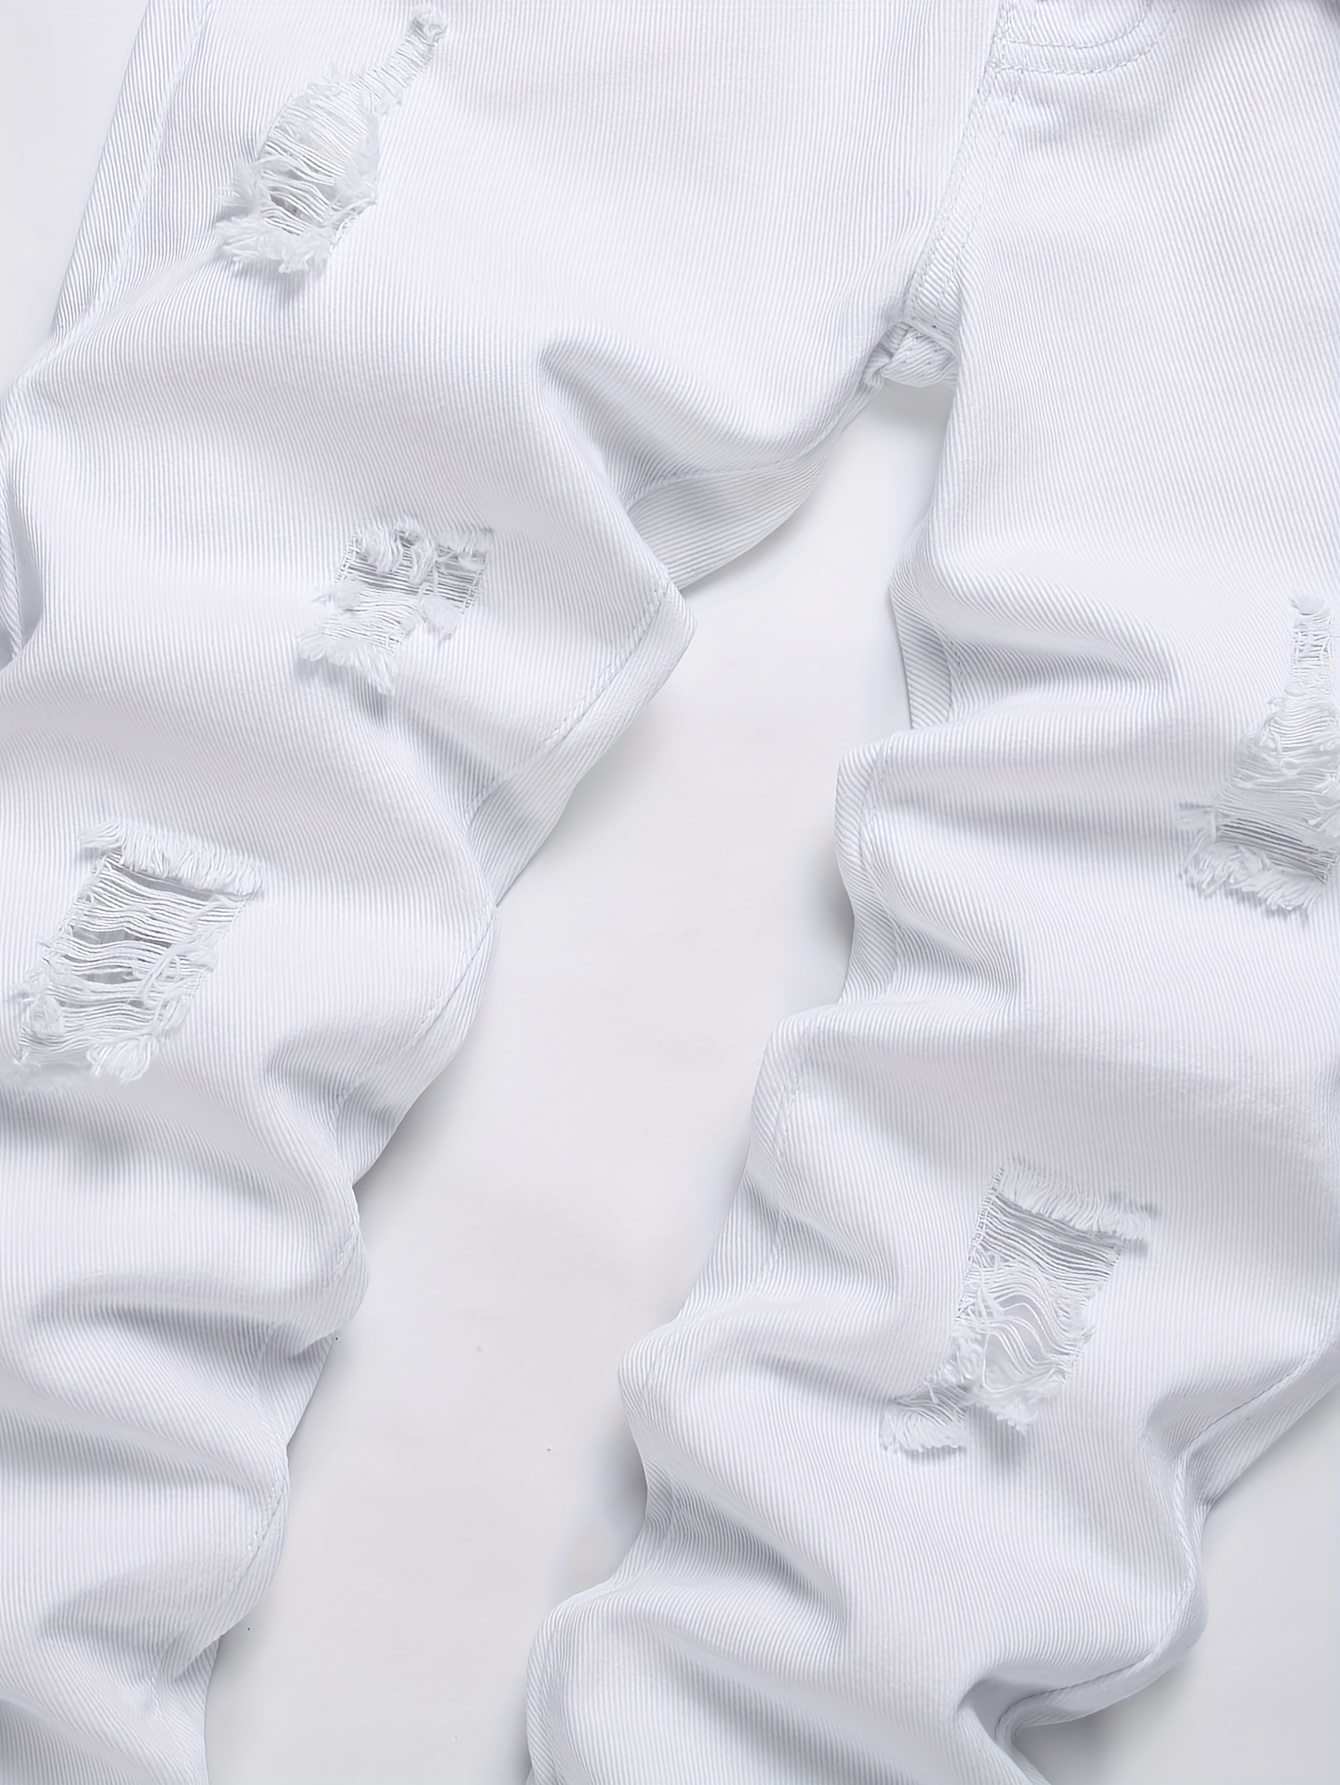 Calças Jeans Brancas Rasgadas Para Crianças Calças De Brim - Temu